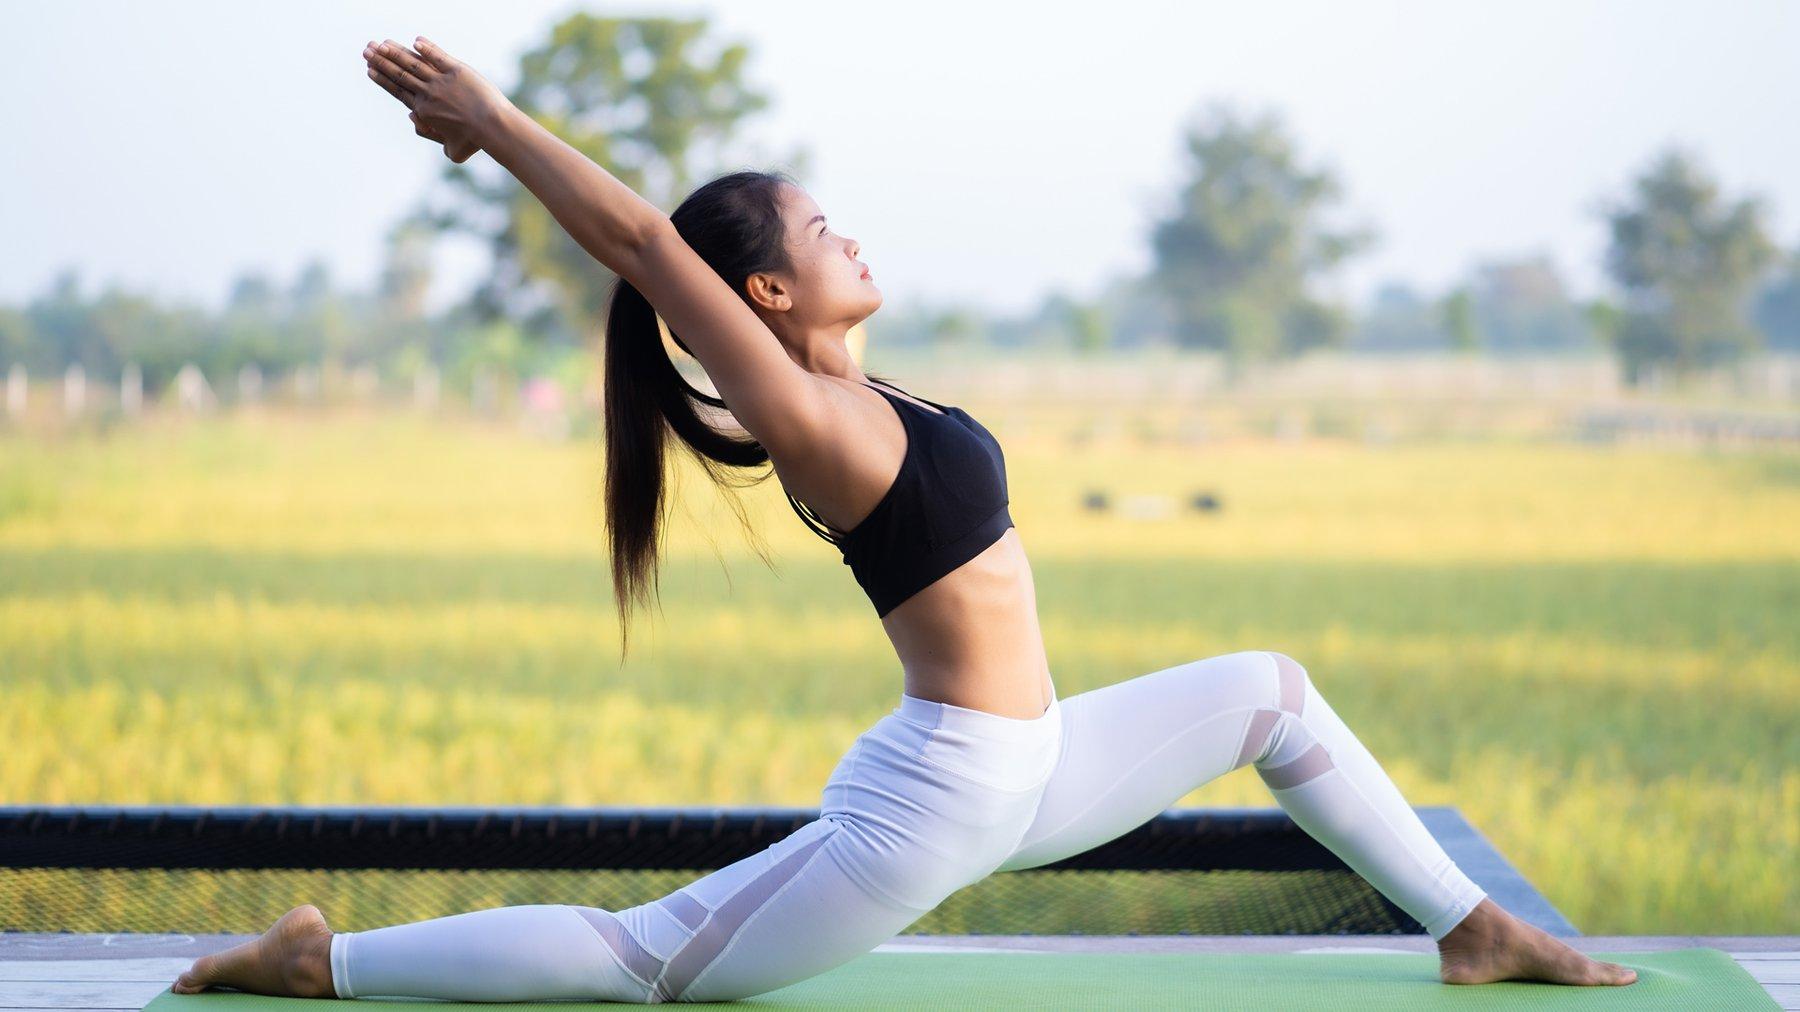 Tập yoga vào buổi sáng cũng là một lựa chọn tốt để bạn tỉnh táo nhanh (Ảnh: Internet).